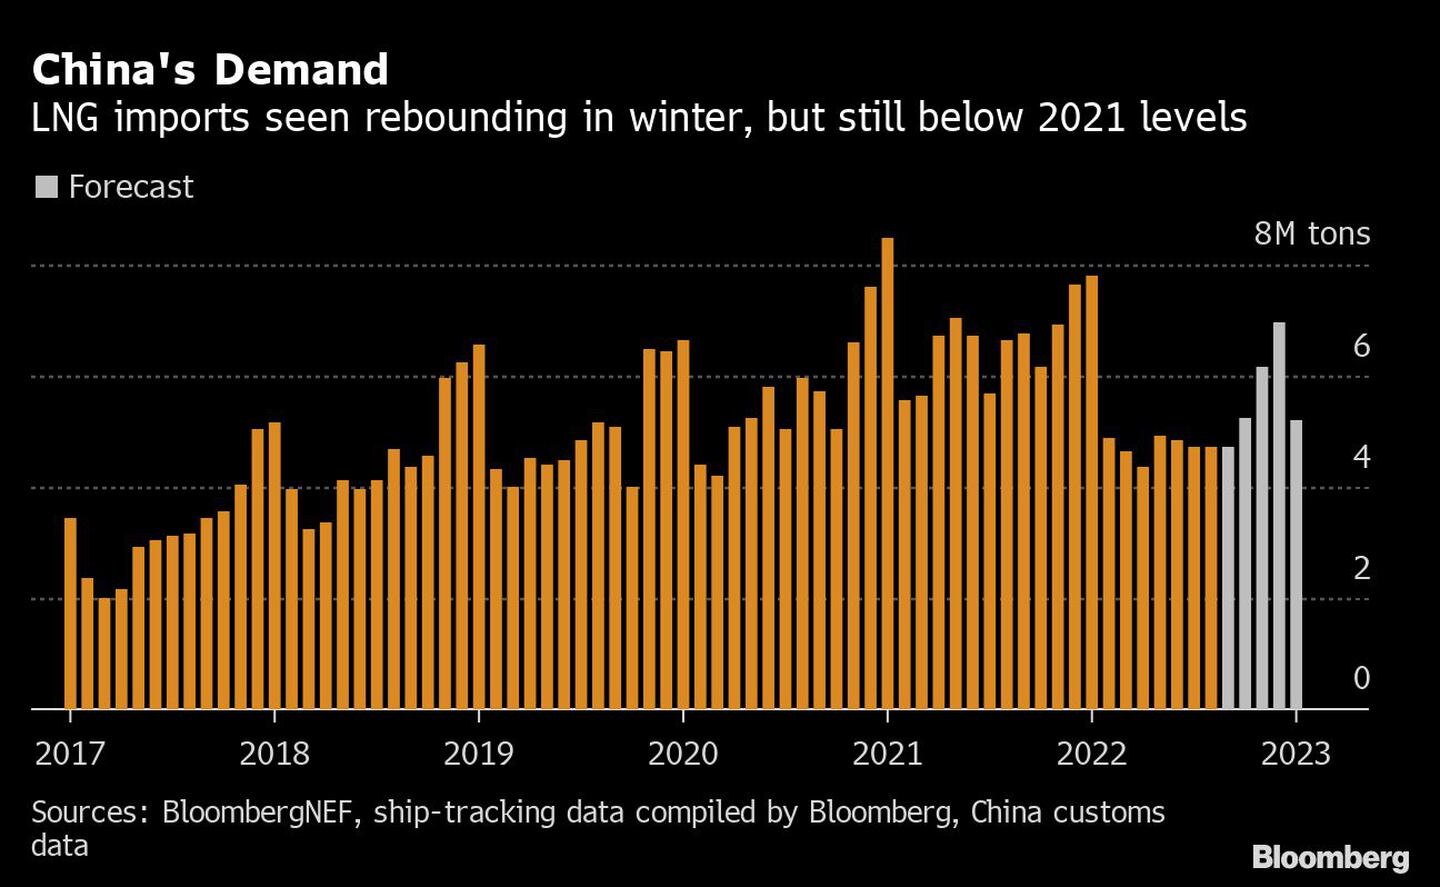  Las importaciones de GNL repuntan en invierno, pero siguen por debajo de los niveles de 2021dfd